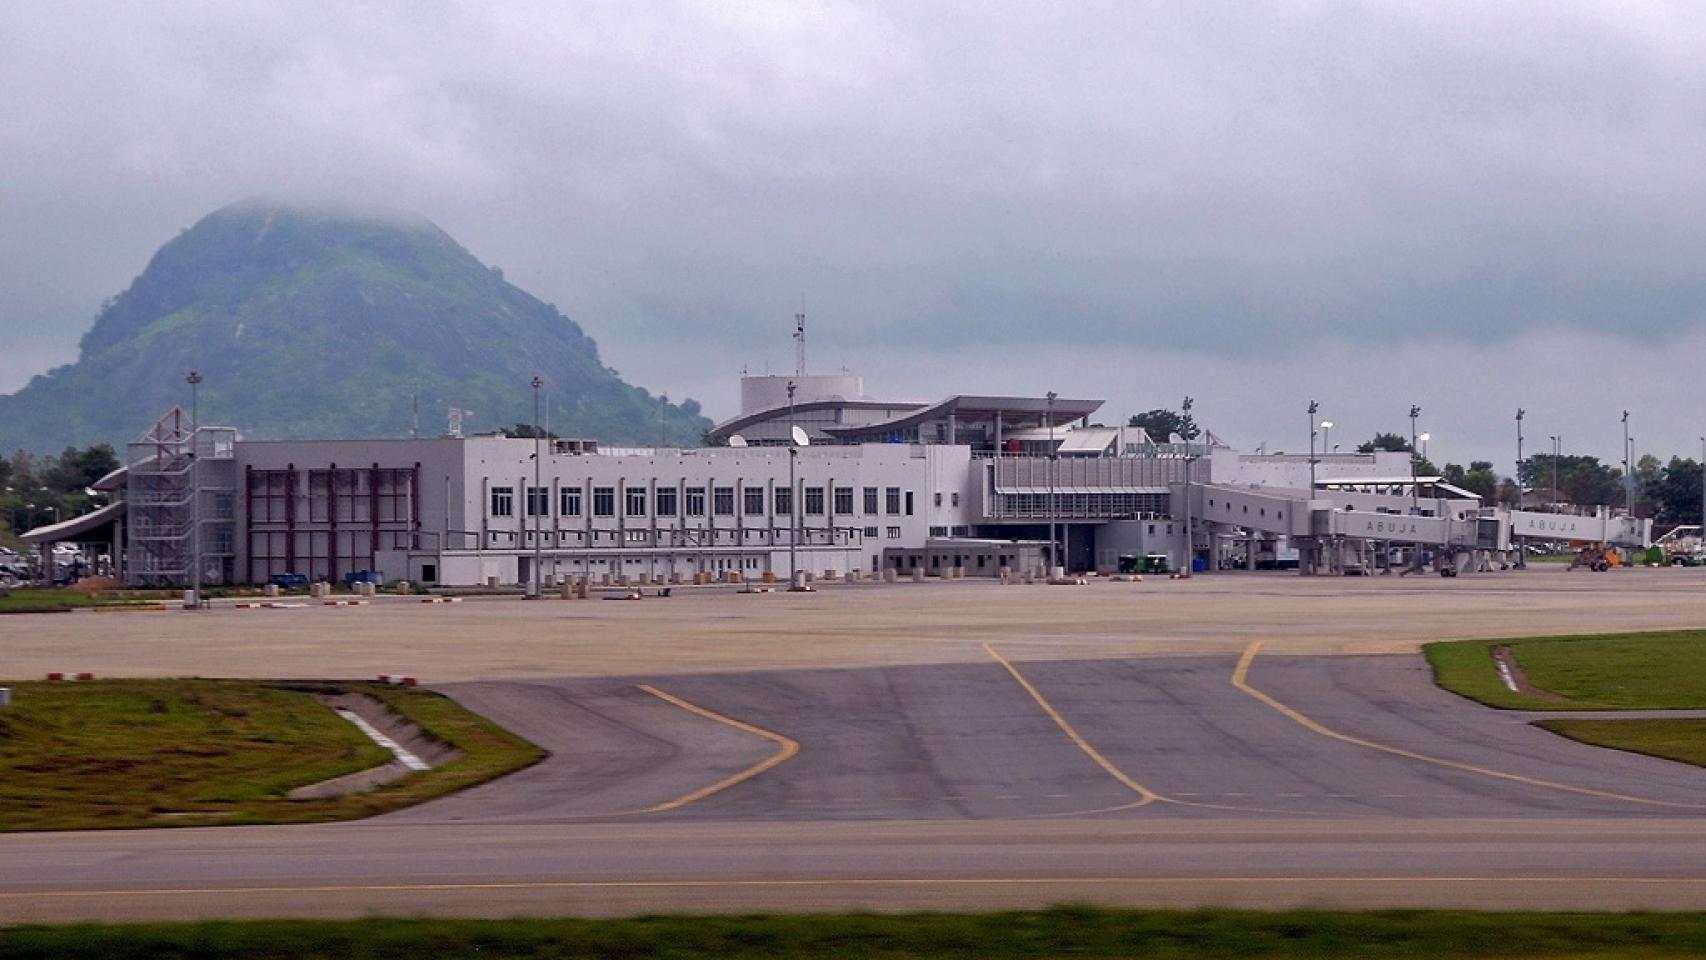 Aeropuerto Internacional Nnamdi Azikiwe